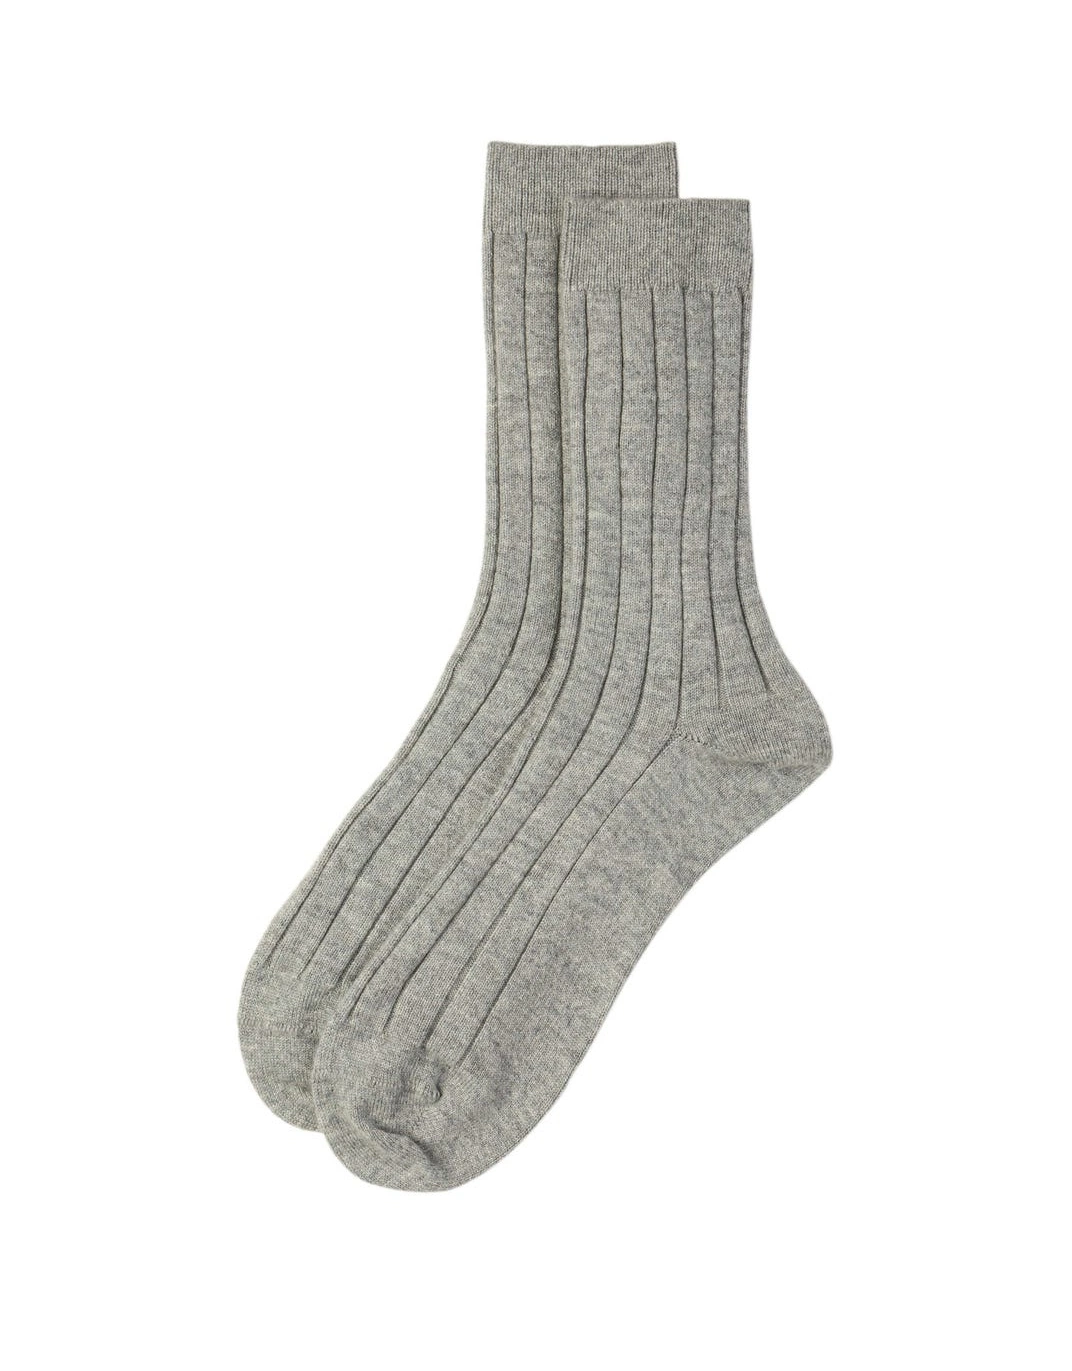 Men&prime; S 100% Cashmere Rib Socks Apparel Accessories